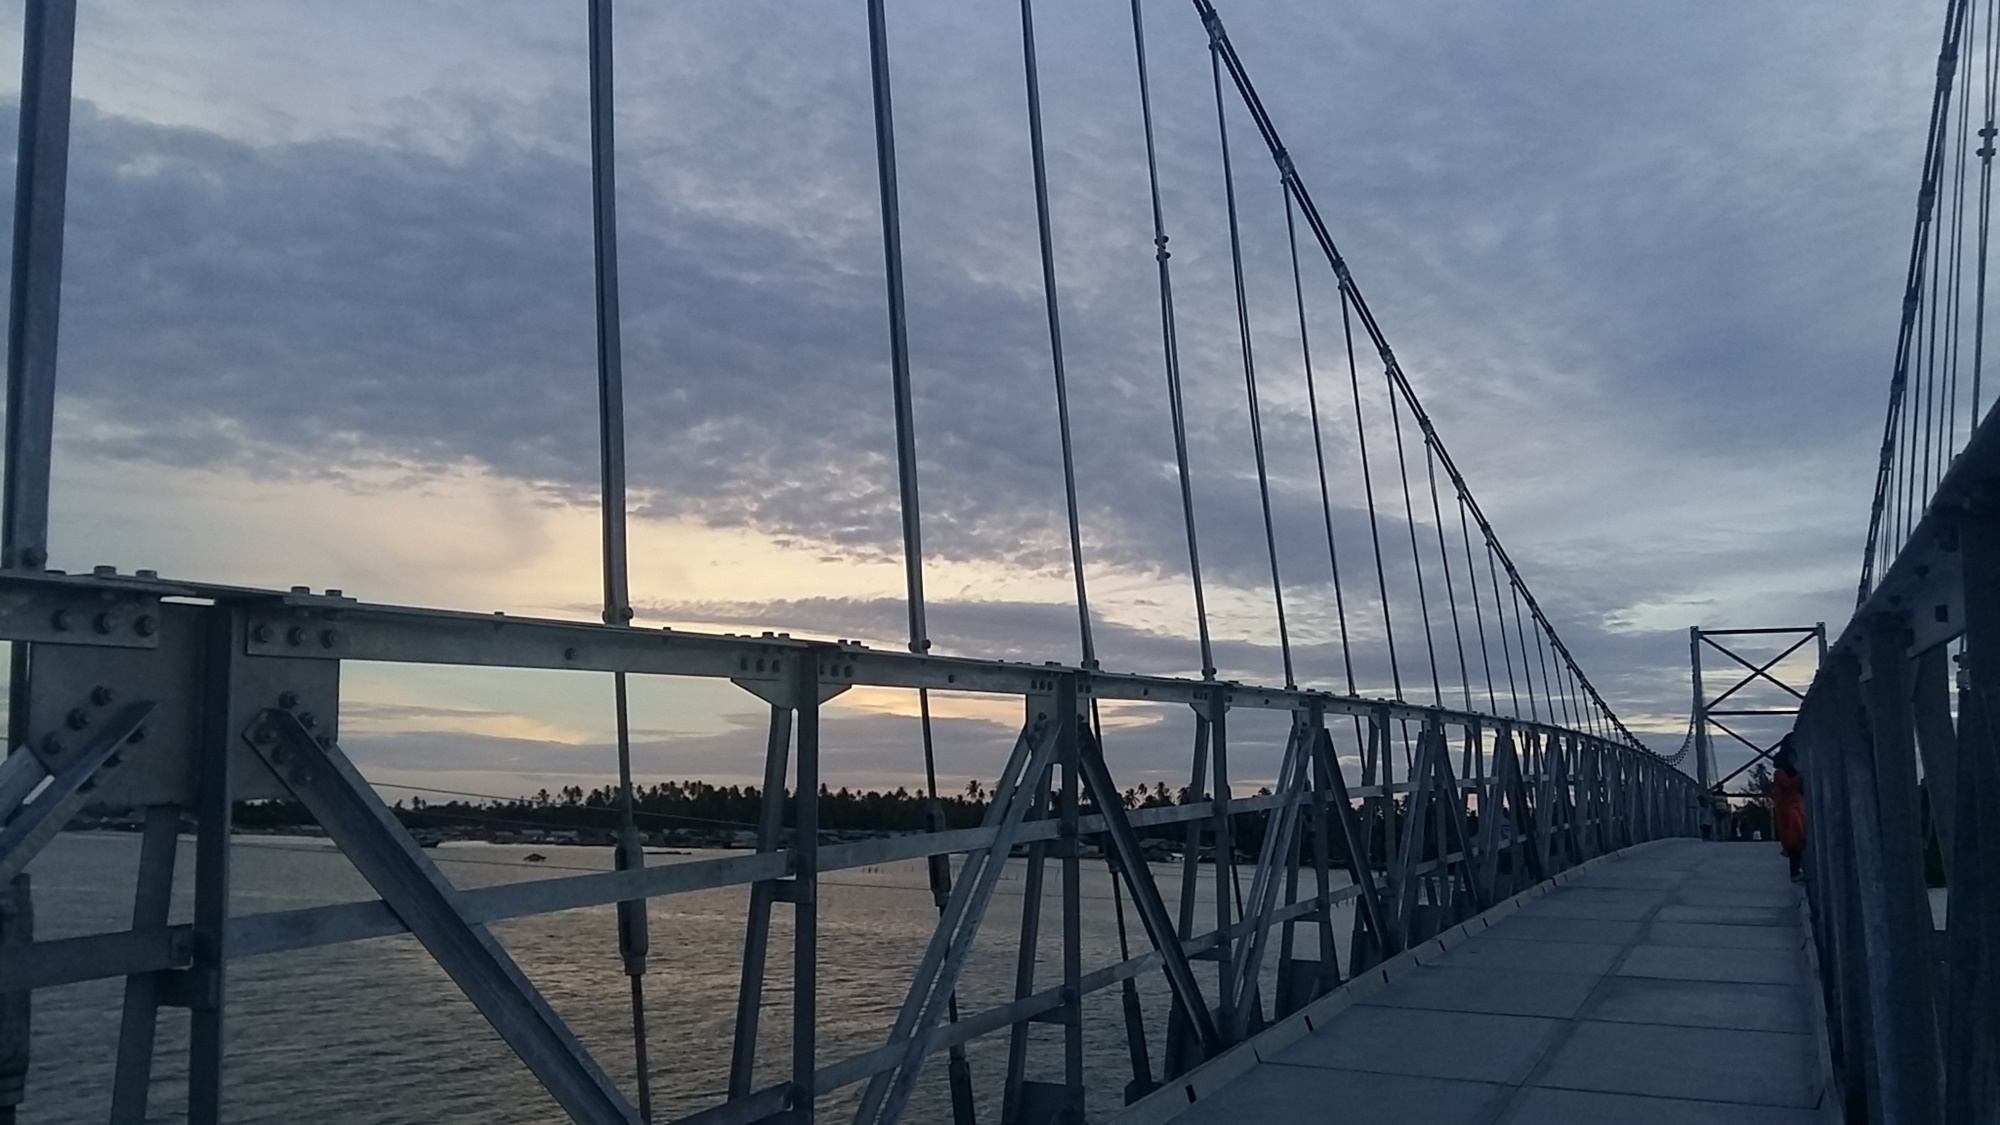 Jembatan penghubung Pulau Balai dan Pulau Ujung Batu